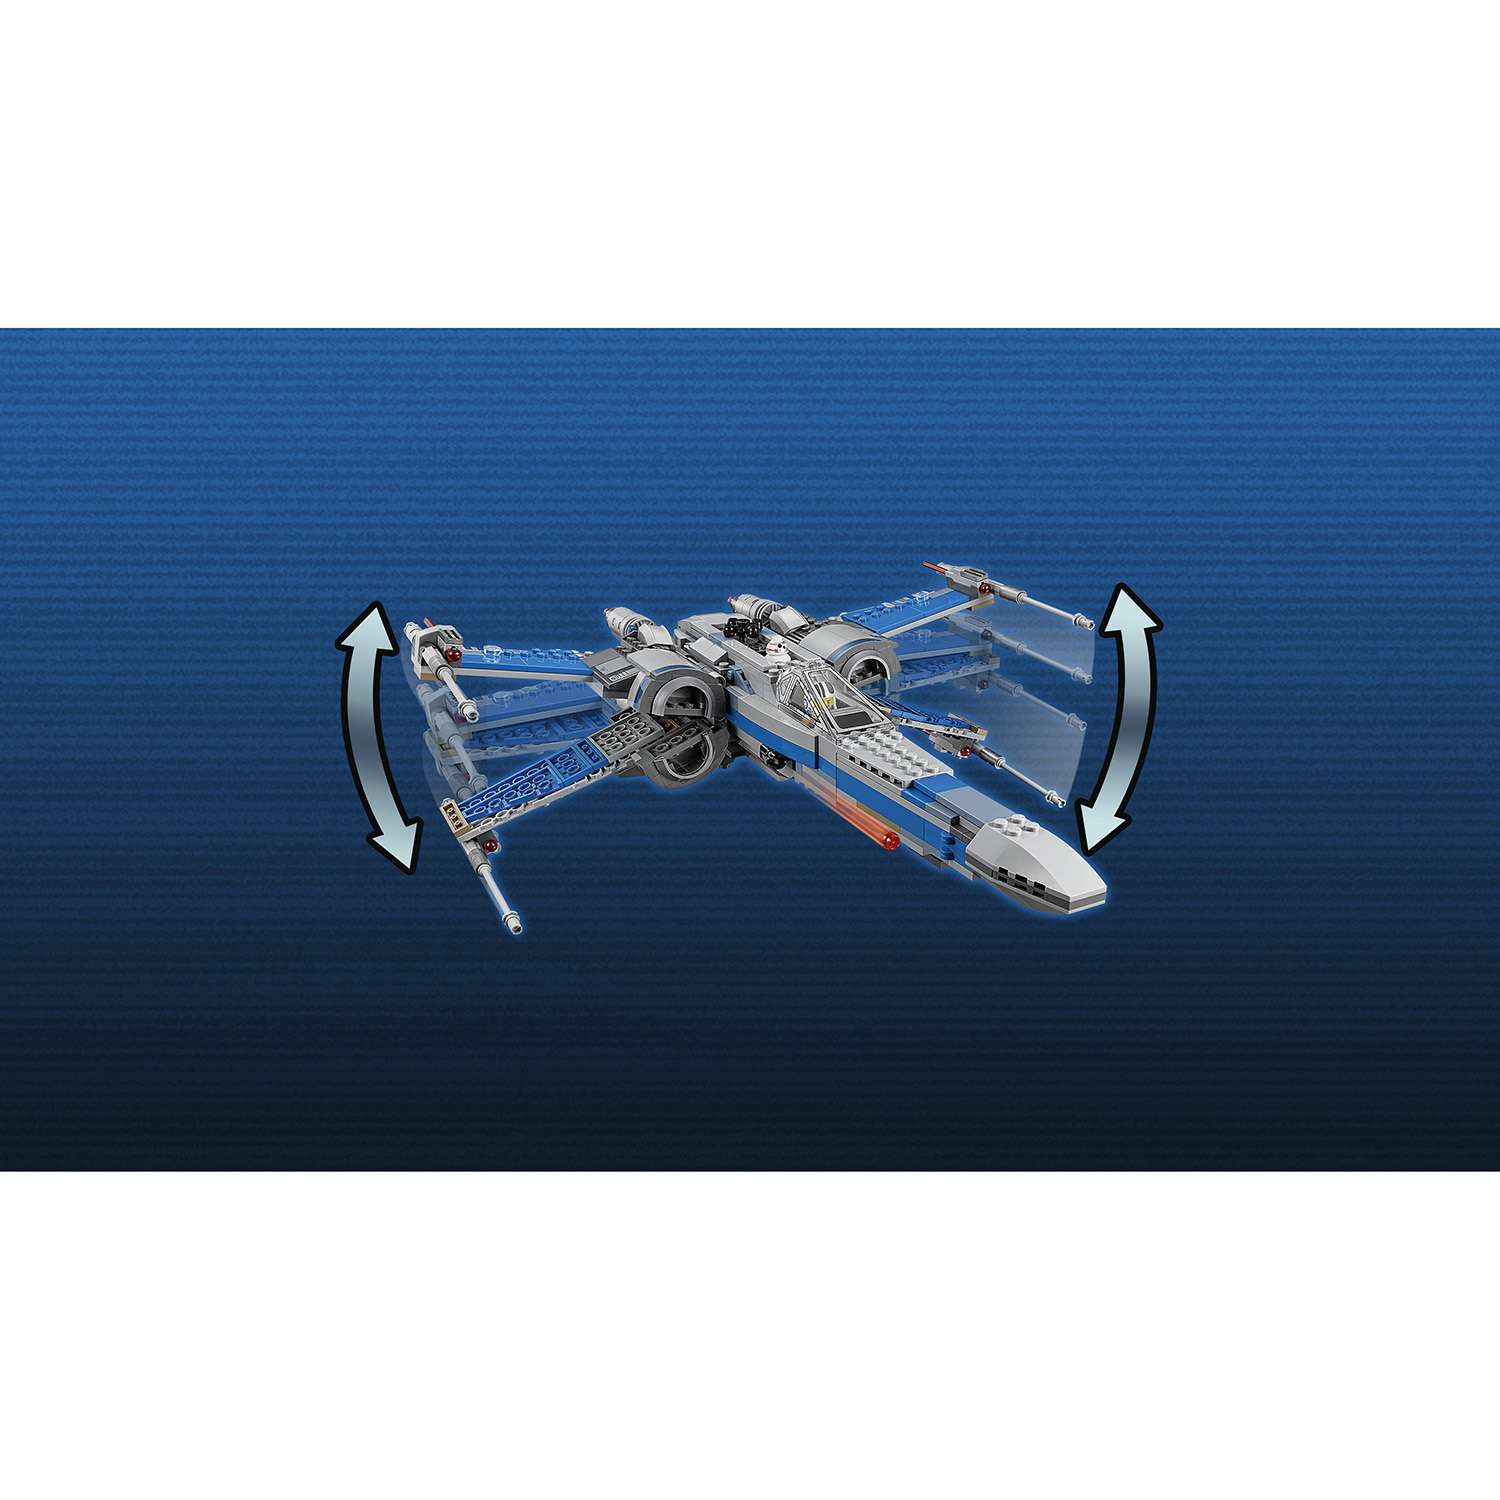 Конструктор LEGO Star Wars TM Истребитель Сопротивления типа Икс (75149) - фото 6